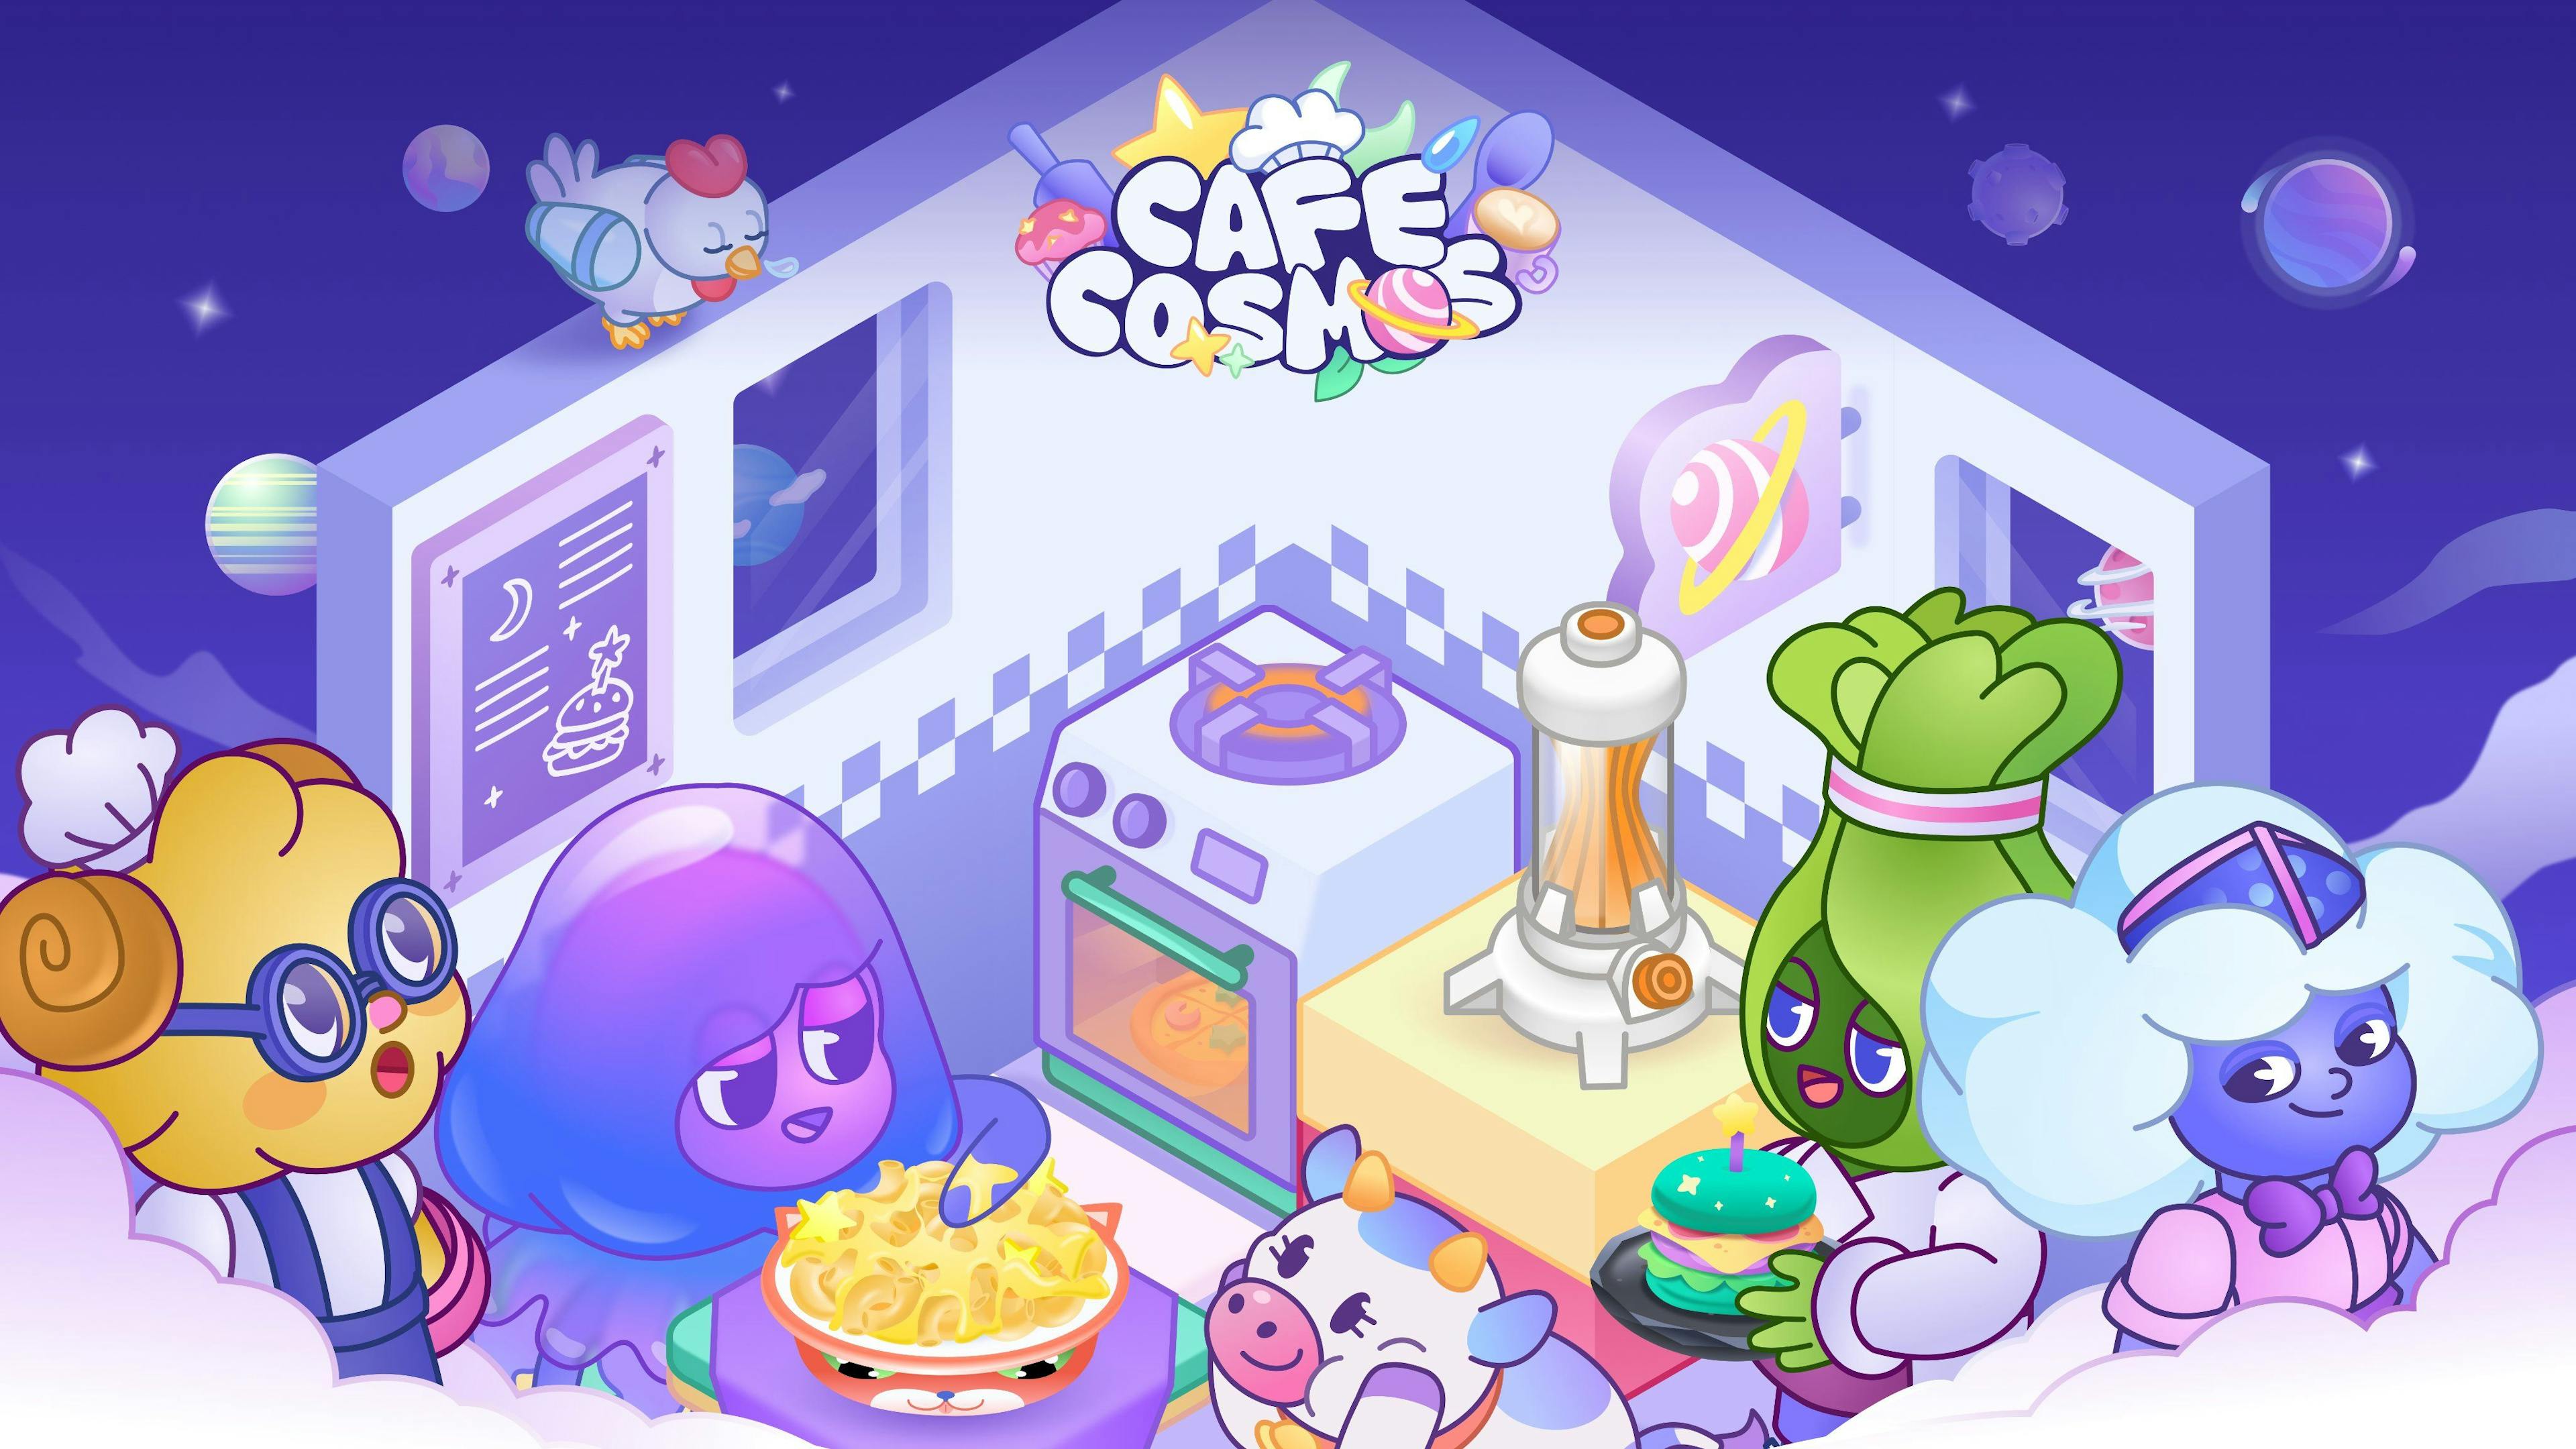 cafe cosmos game image 4.jpg